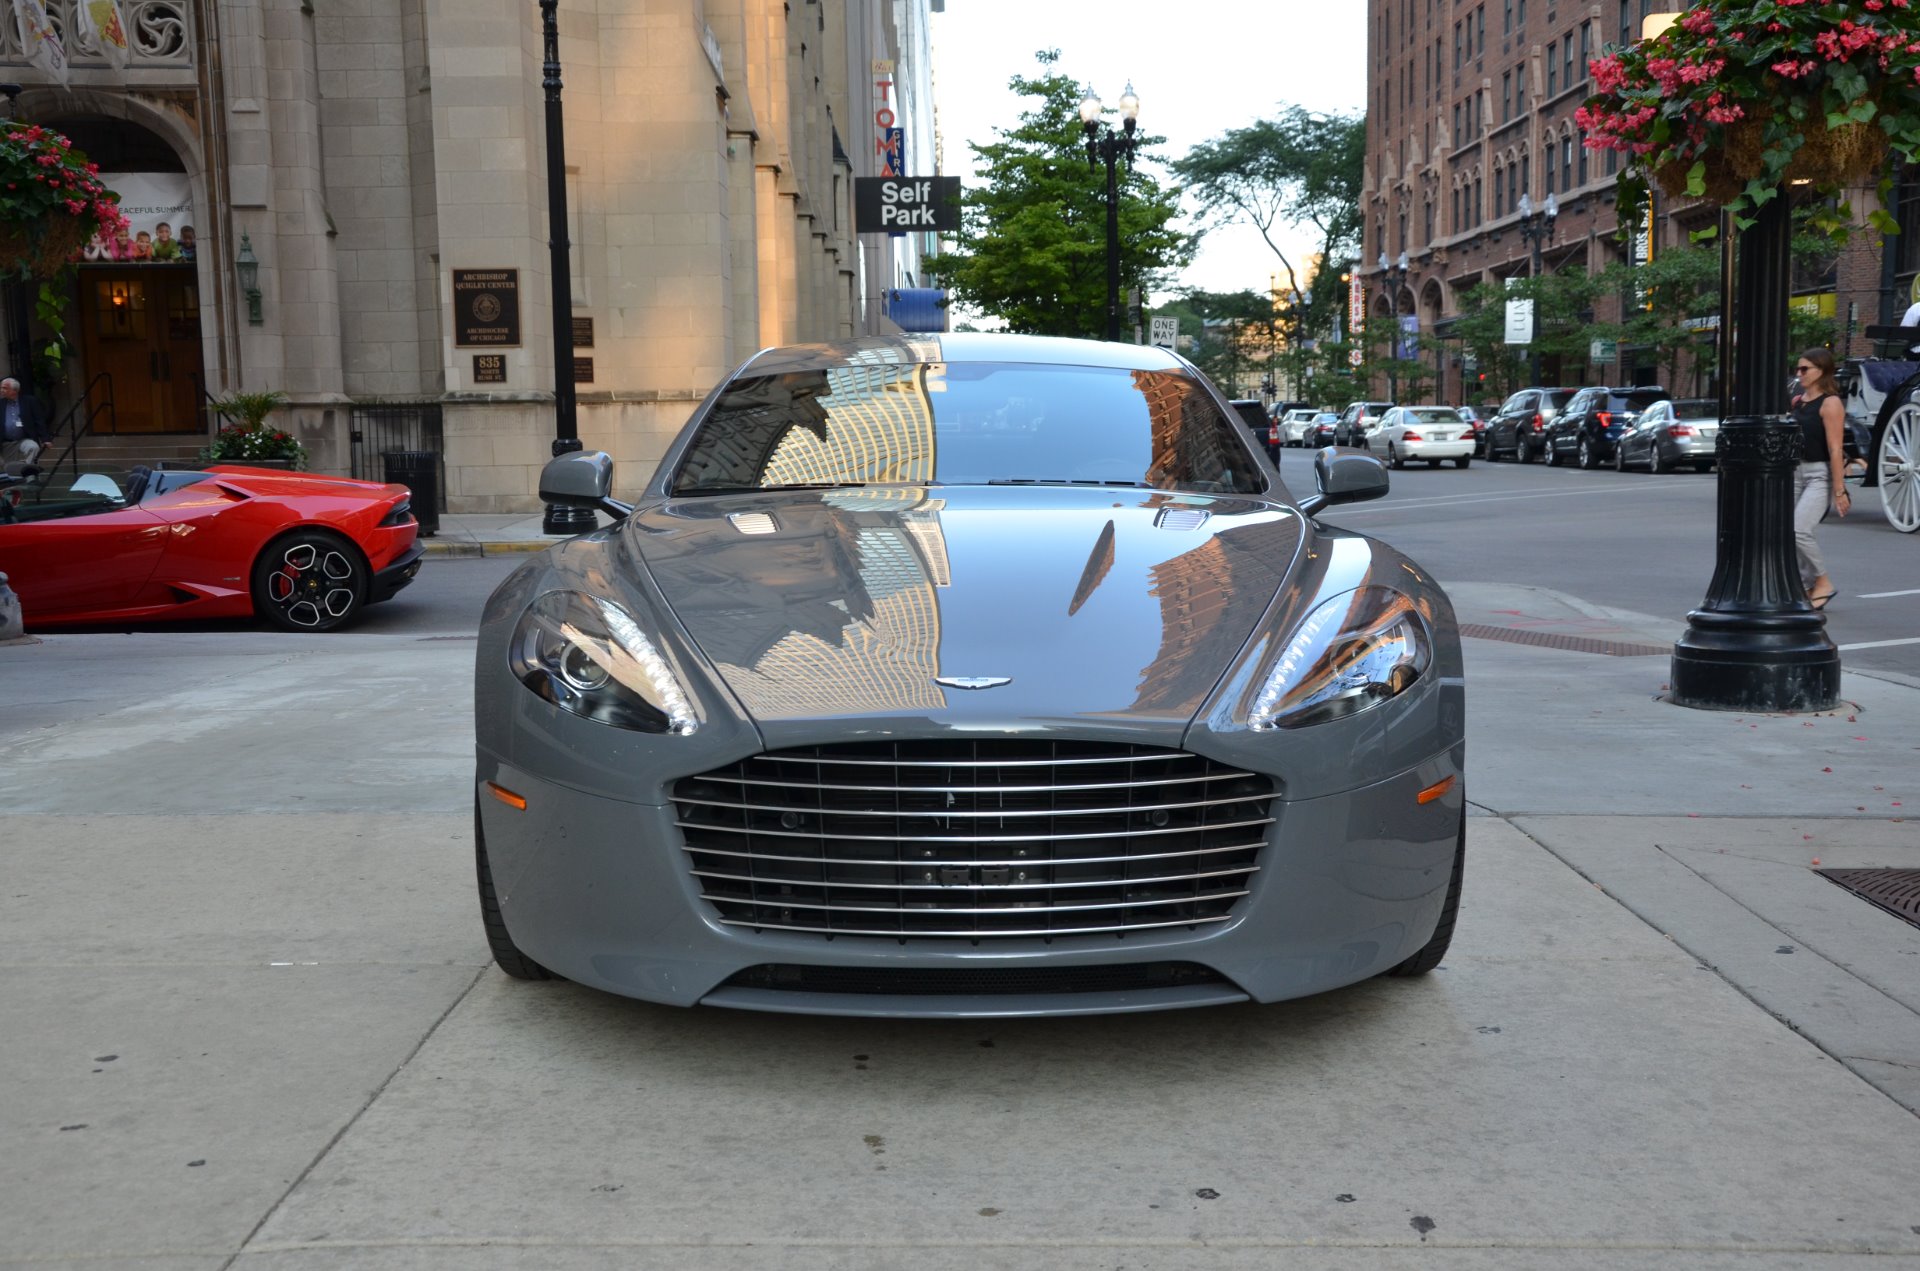 2015 Aston Martin Rapide S Stock # GC2015-S for sale near Chicago, IL | IL Aston  Martin Dealer